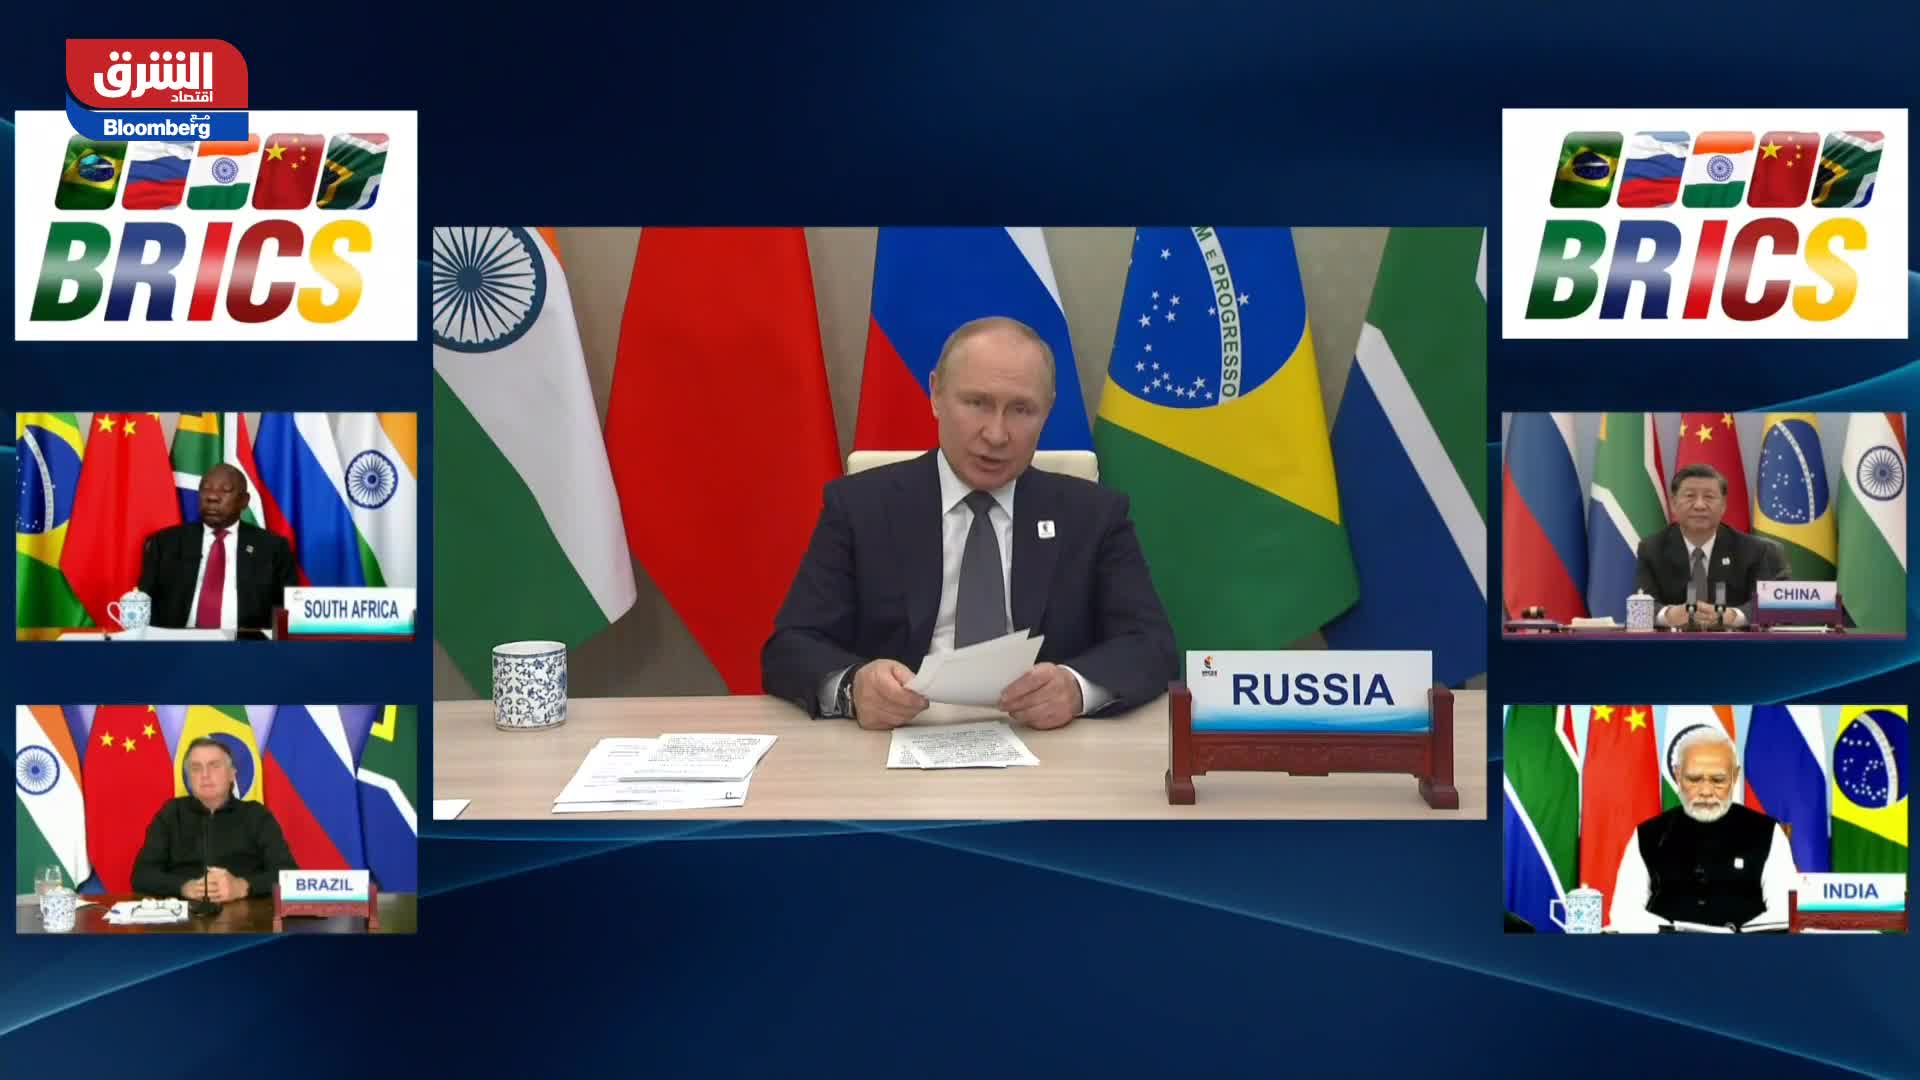 كلمة الرئيس الروسي فلاديمير بوتين خلال المؤتمر الافتراضي لقمة دول البريكس